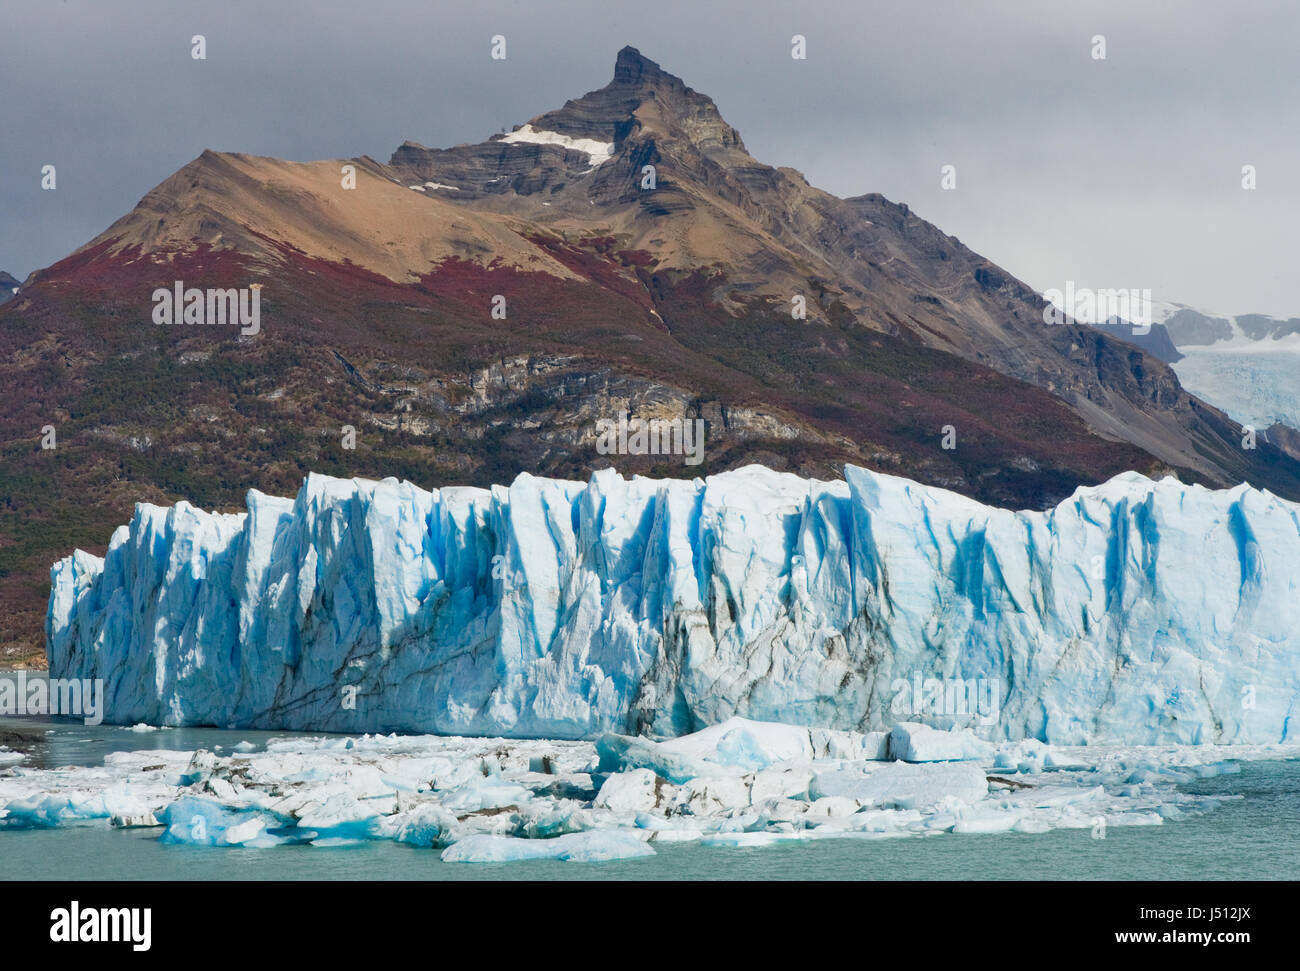 Allgemeiner Blick auf den Perito Moreno Gletscher. Argentinien. Querformat. Stockfoto